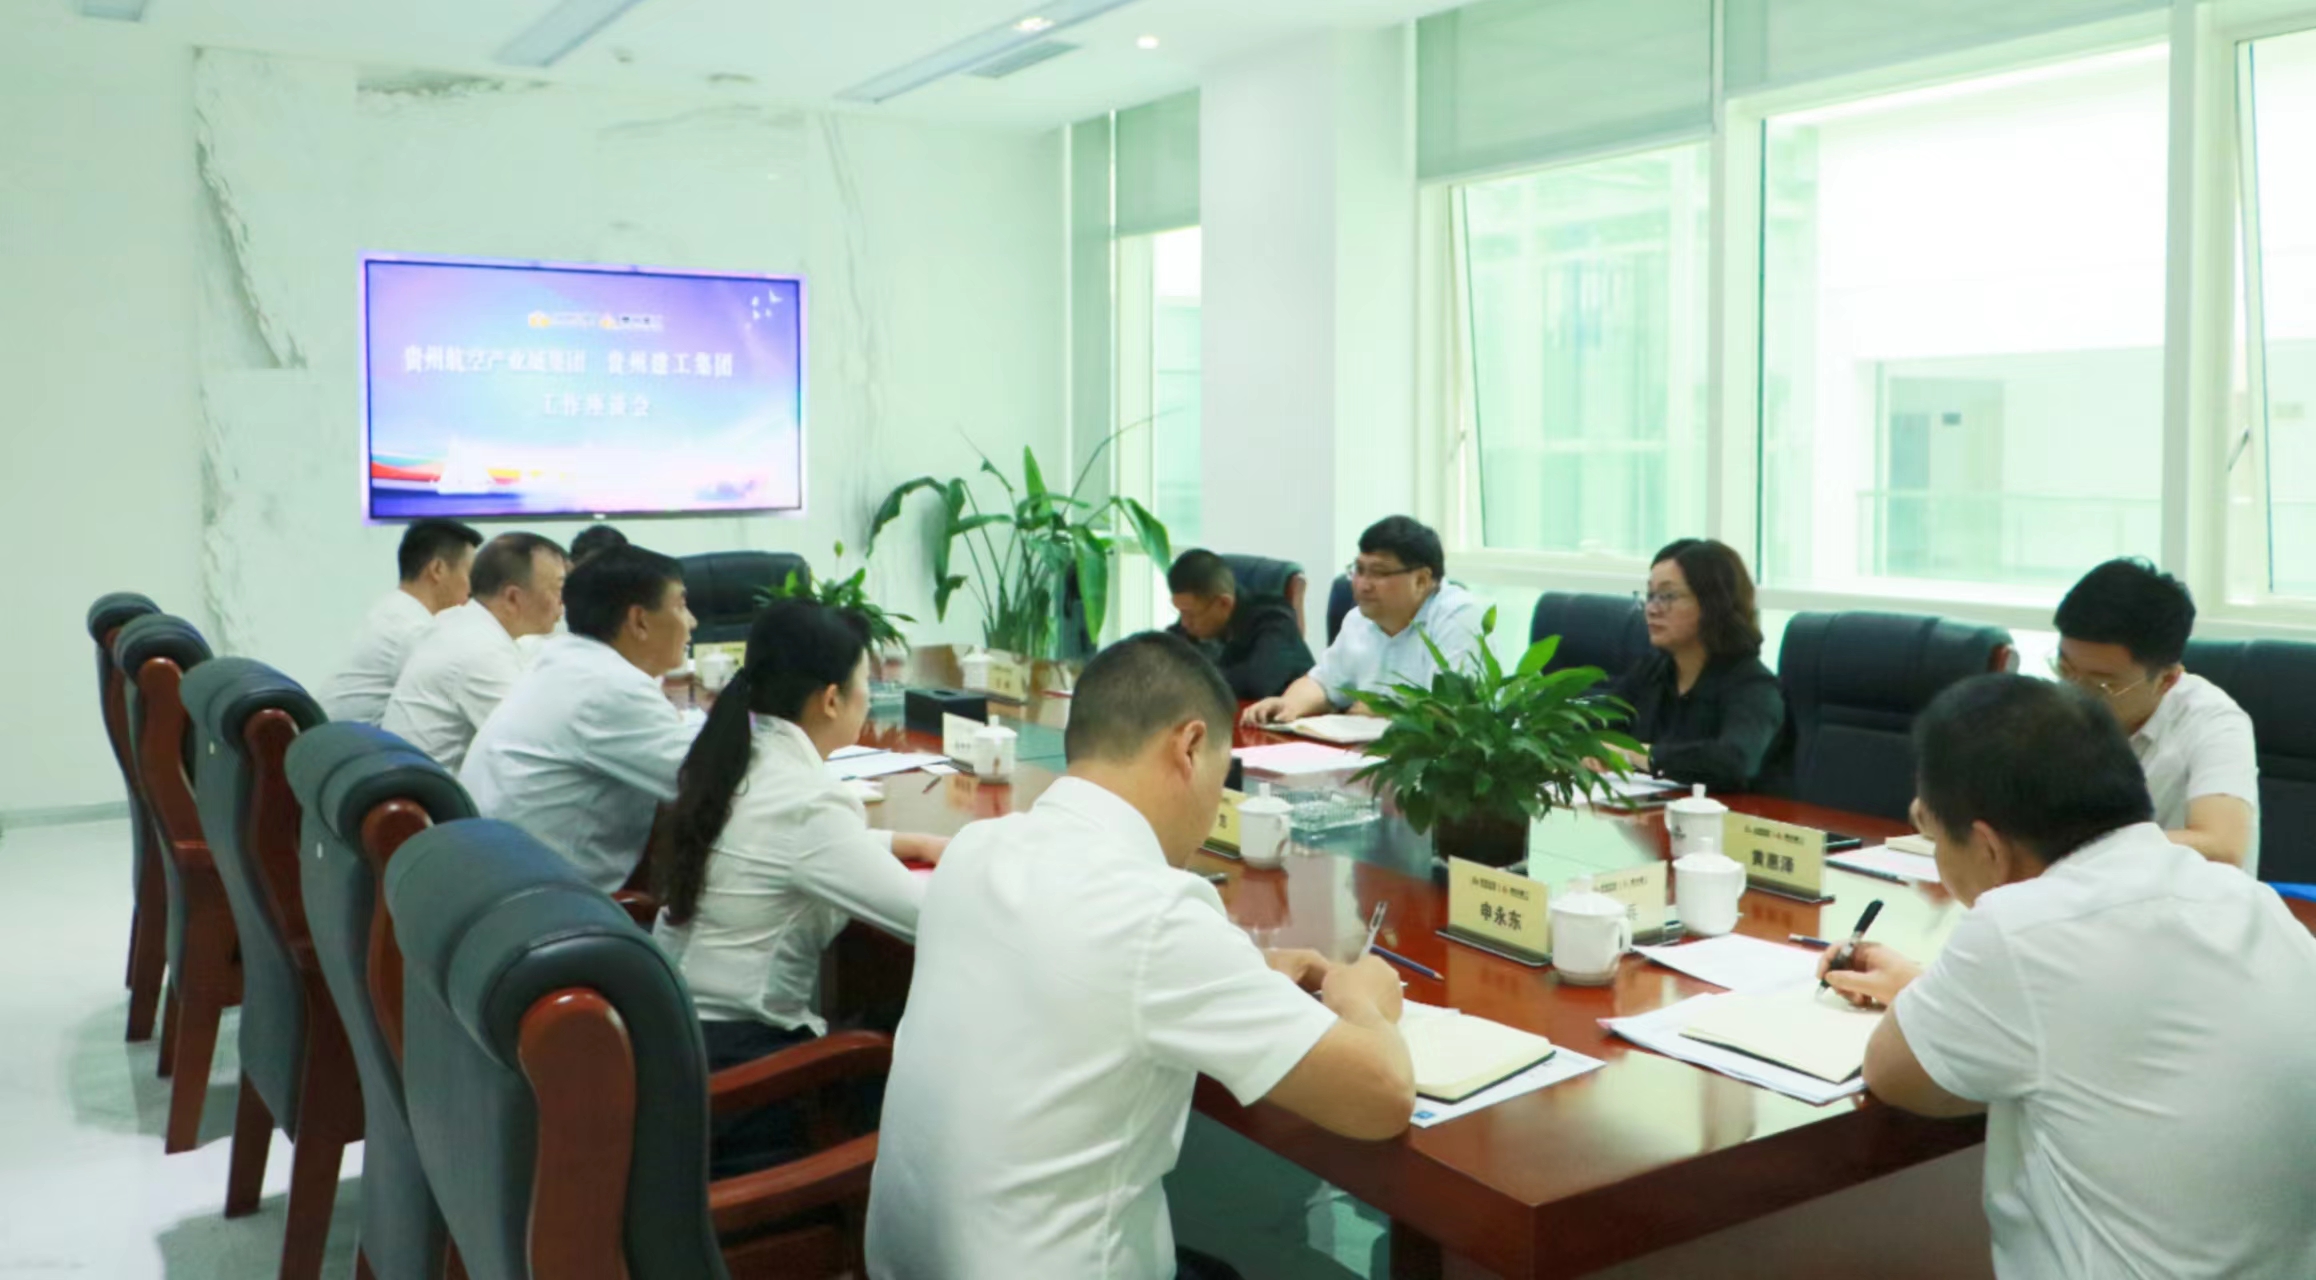  太阳GG集团与贵州航空产业城集团举行工作座谈会